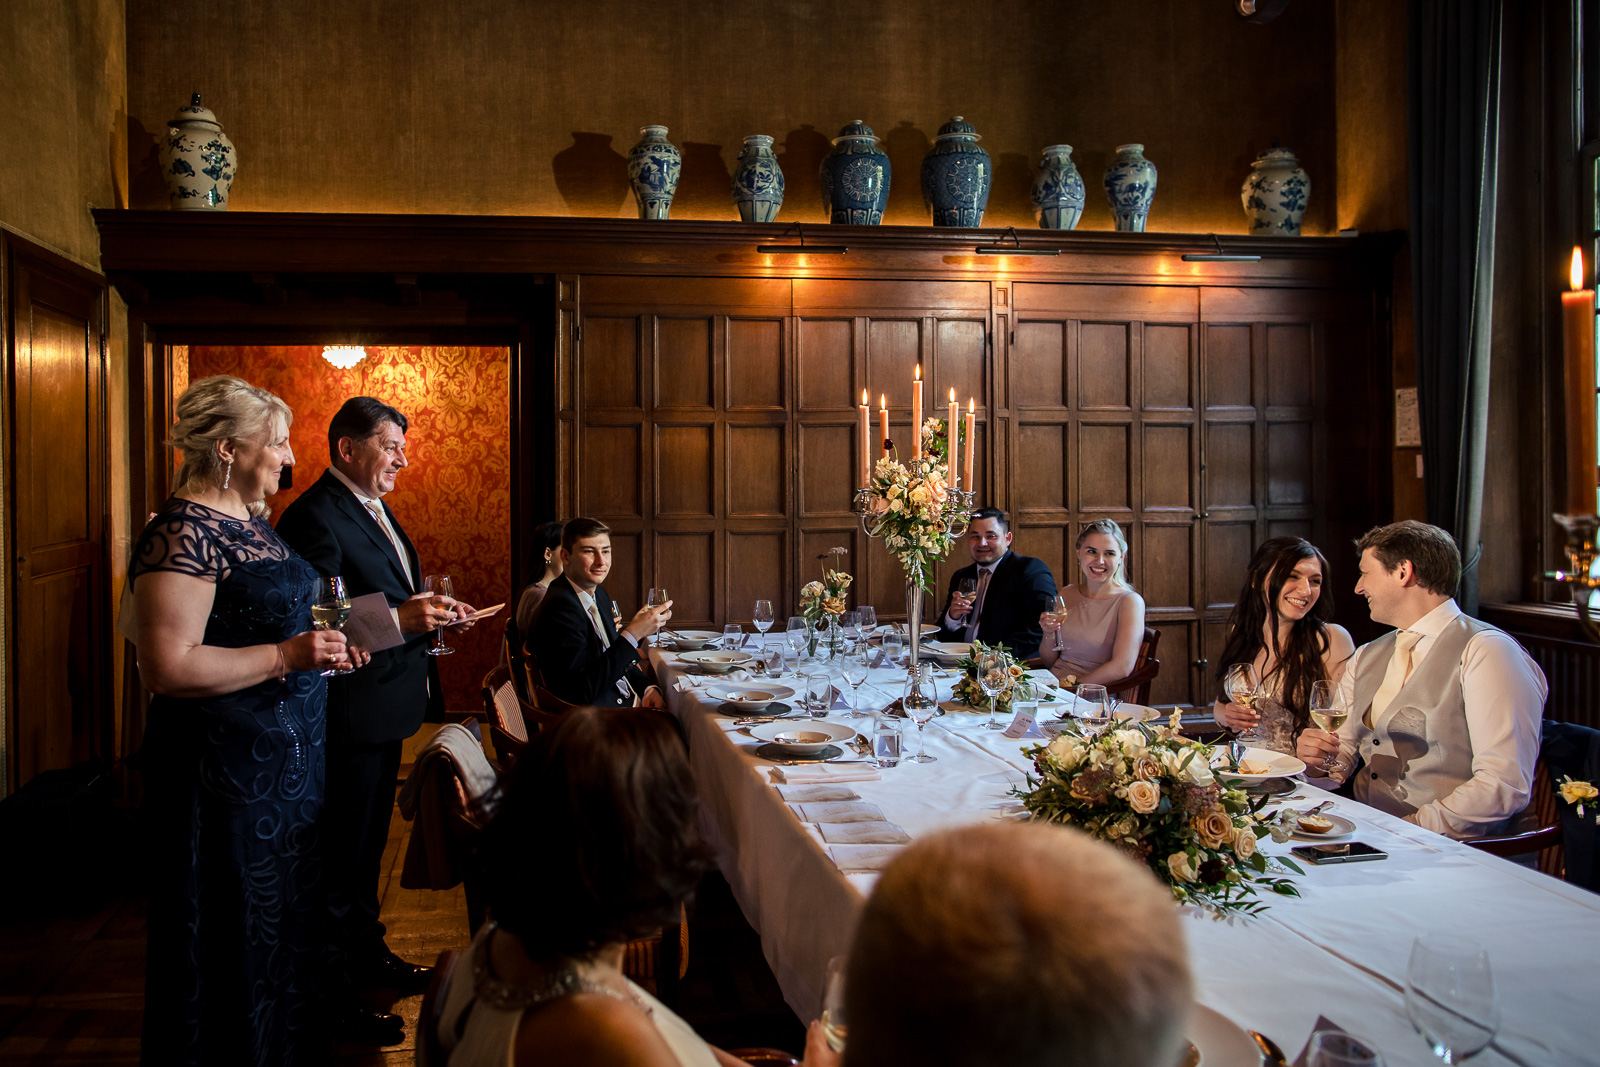 Speeches door familie tijdens trouw diner in een kasteel door kasteel trouwfotograaf